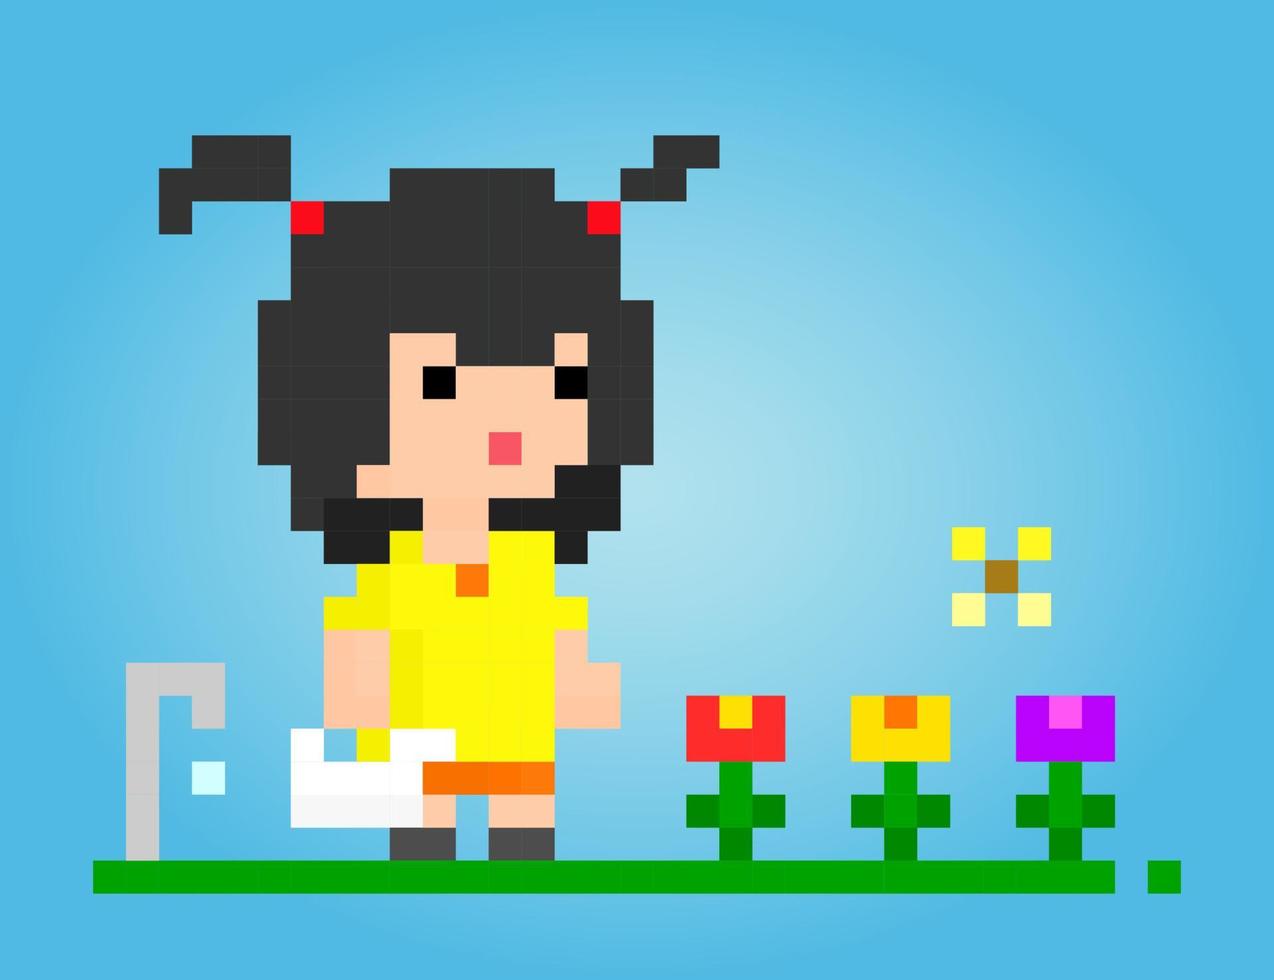 8 bits de flores de rubor de píxeles femeninos. chica de dibujos animados de anime en ilustraciones vectoriales para activos de juegos o patrones de costura cruzada. vector